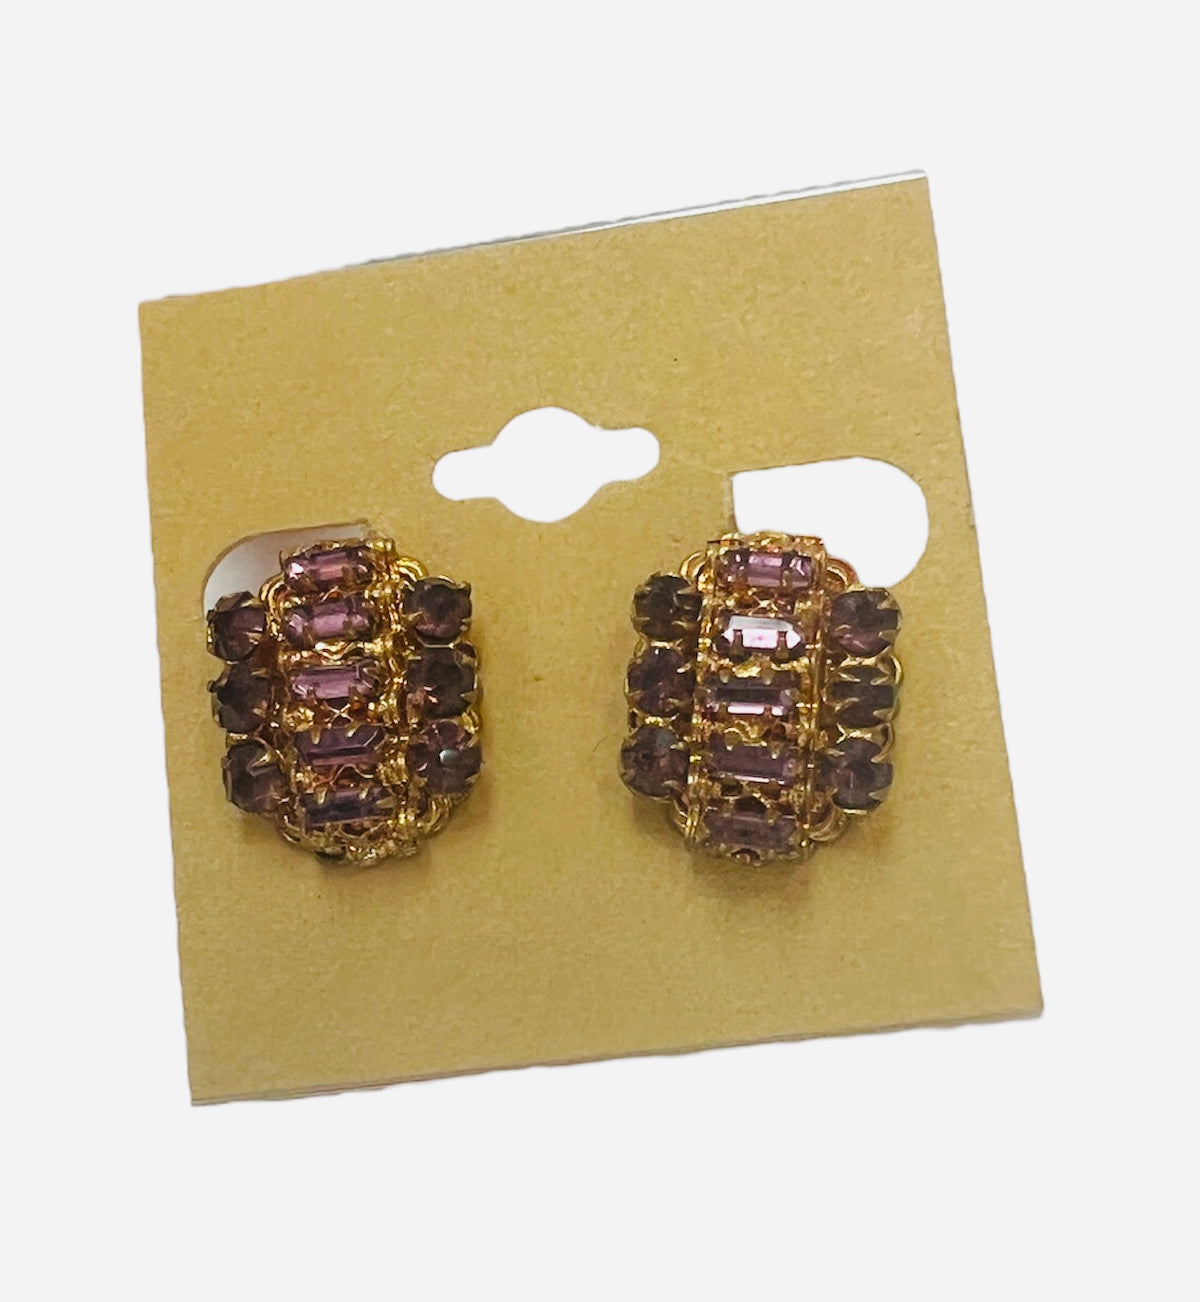 Vintage "Czechosian Copper" Earrings